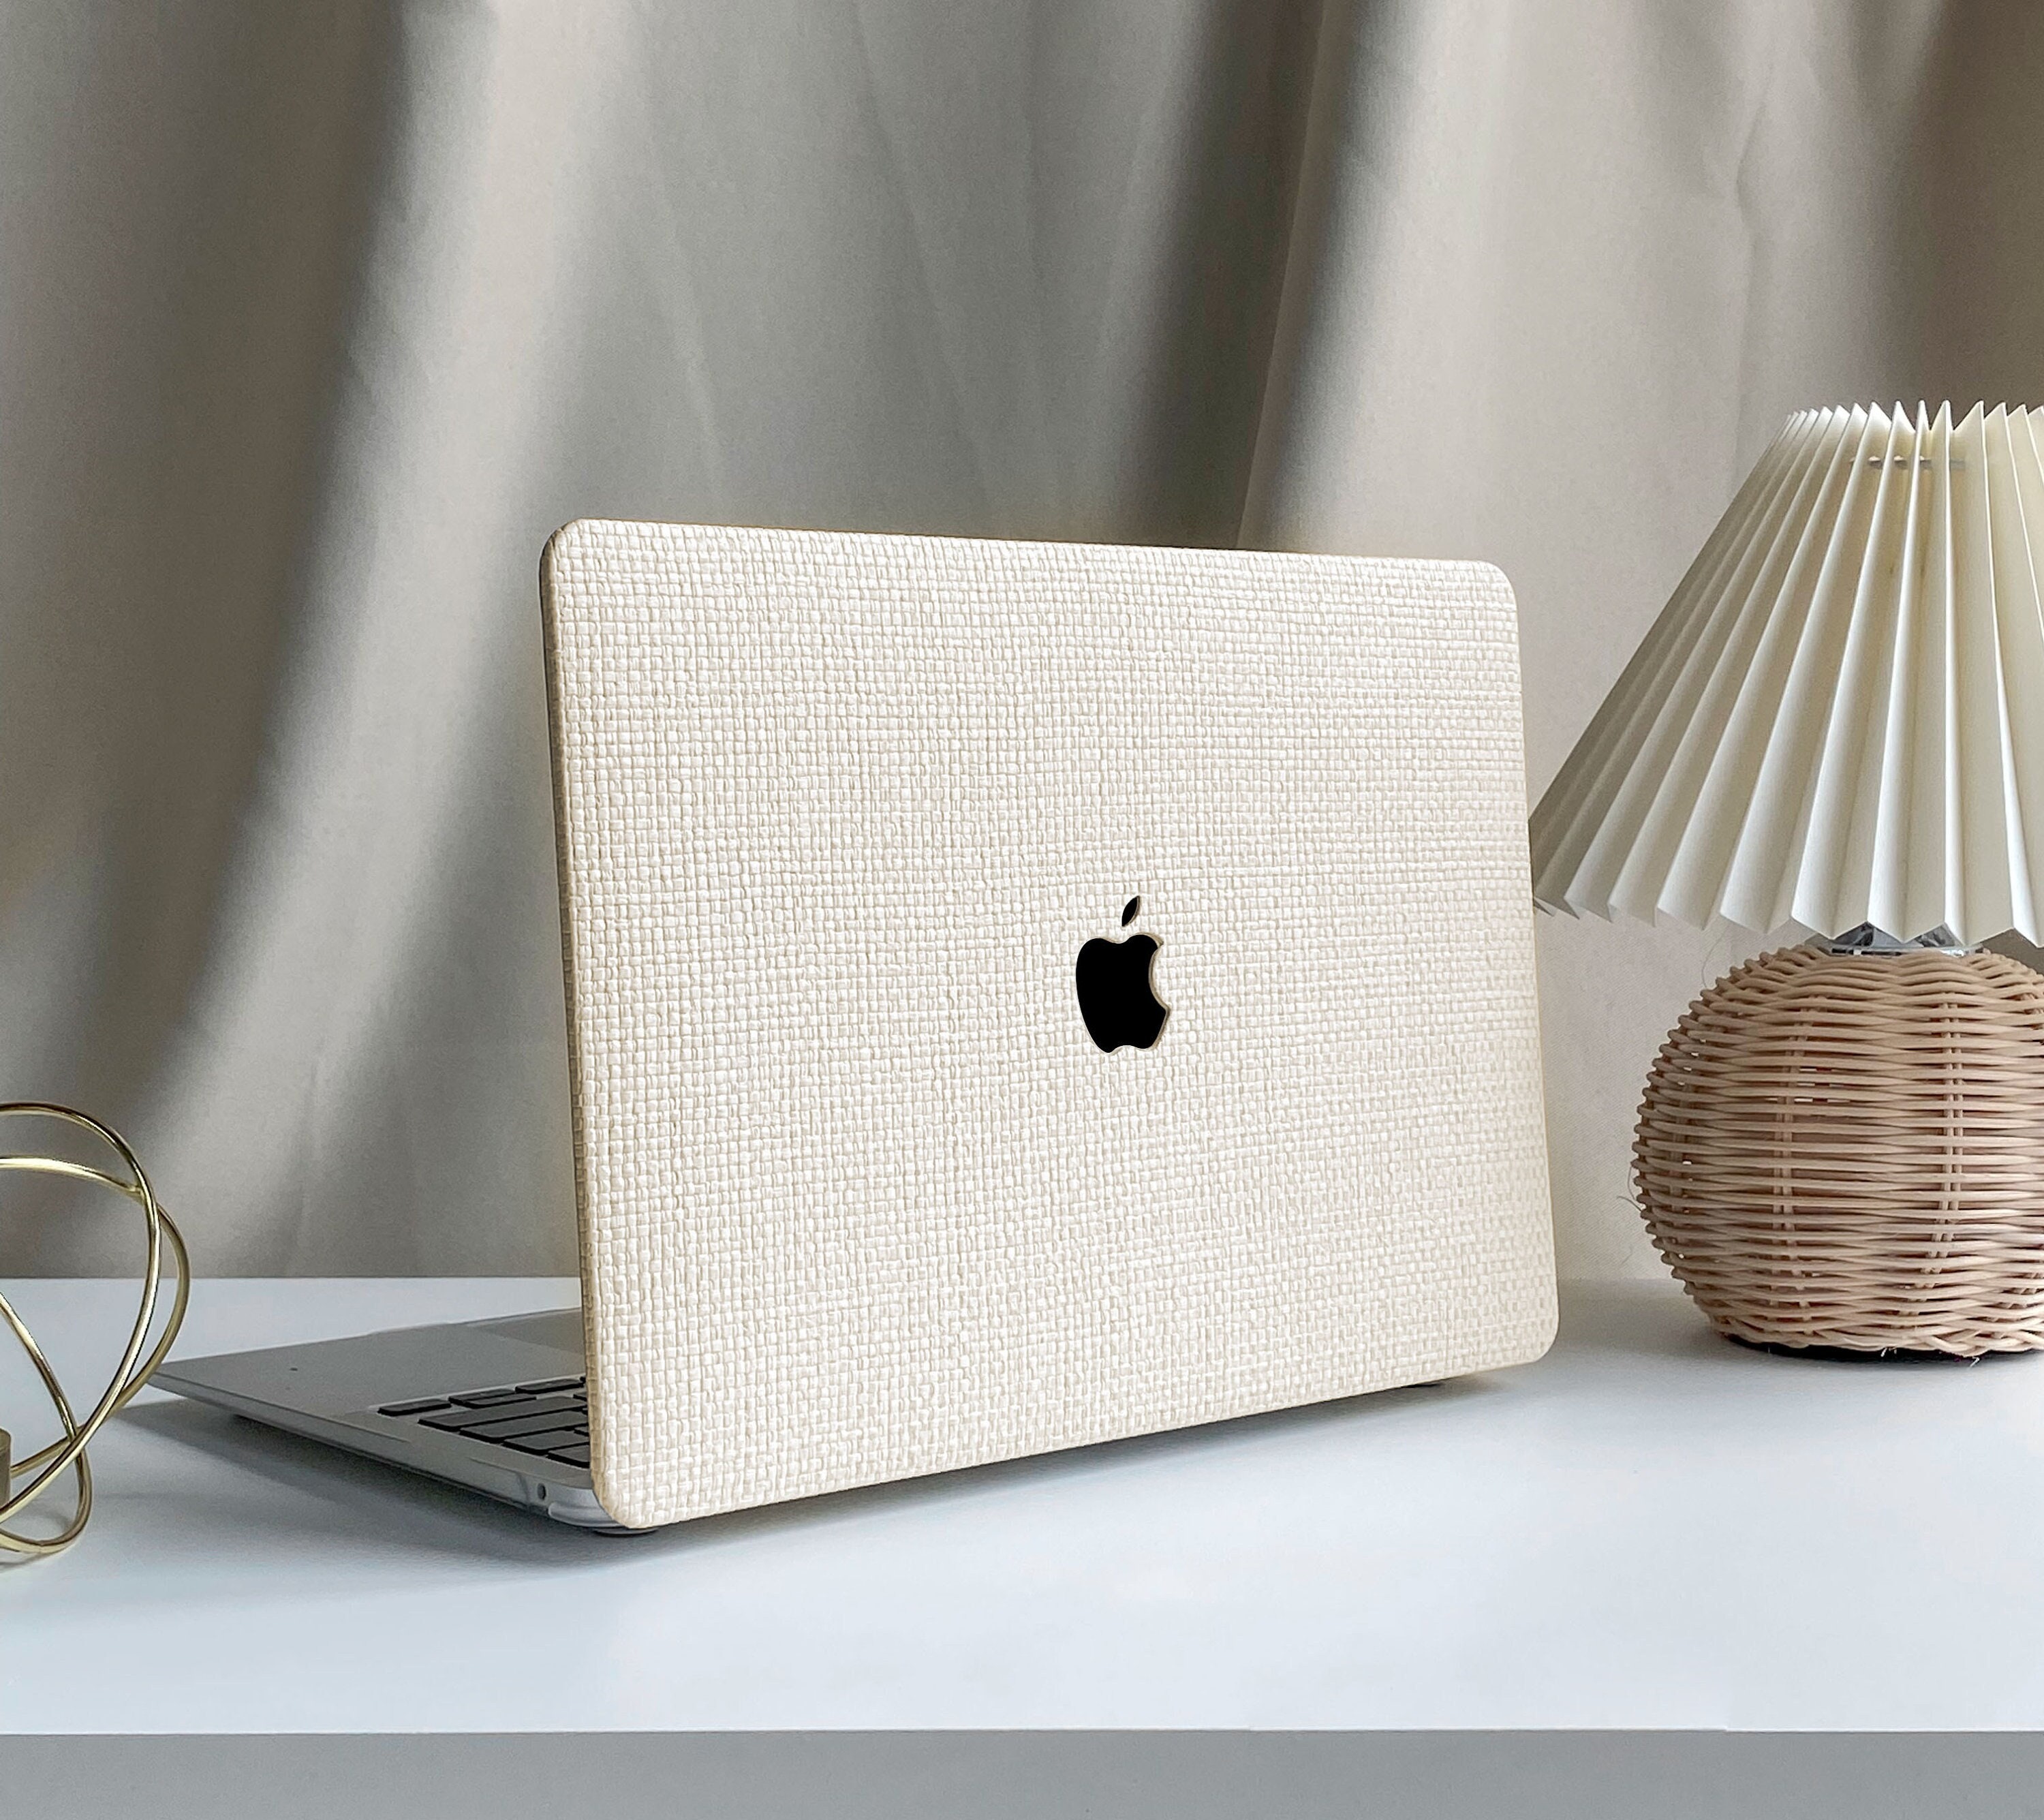 Acheter en ligne EG coque arrière pour MacBook Air 13 Retina (2020) -  formule - Couleur irisée à bons prix et en toute sécurité 